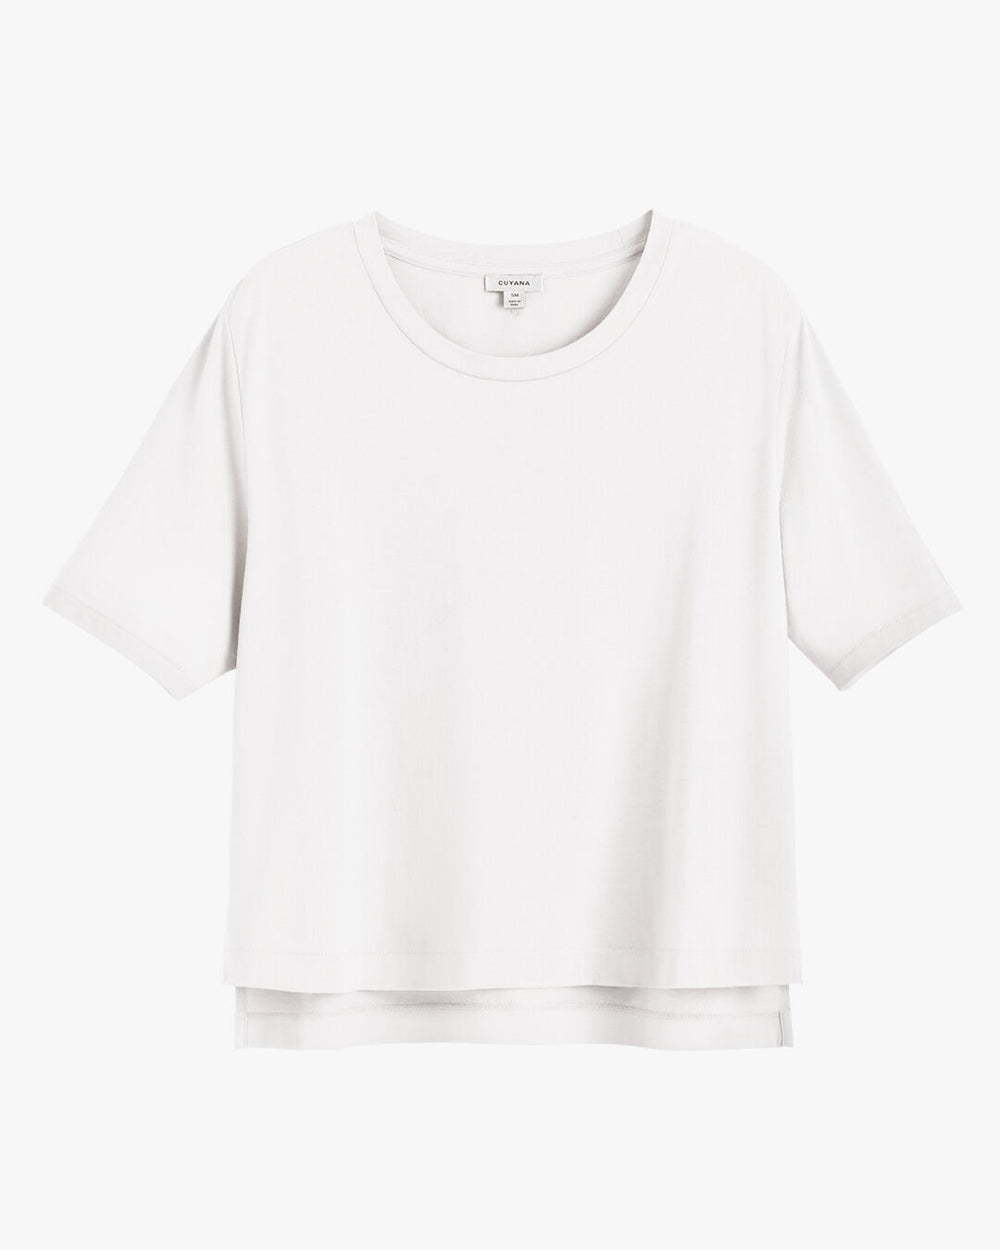 Plain short-sleeved t-shirt on plain background.